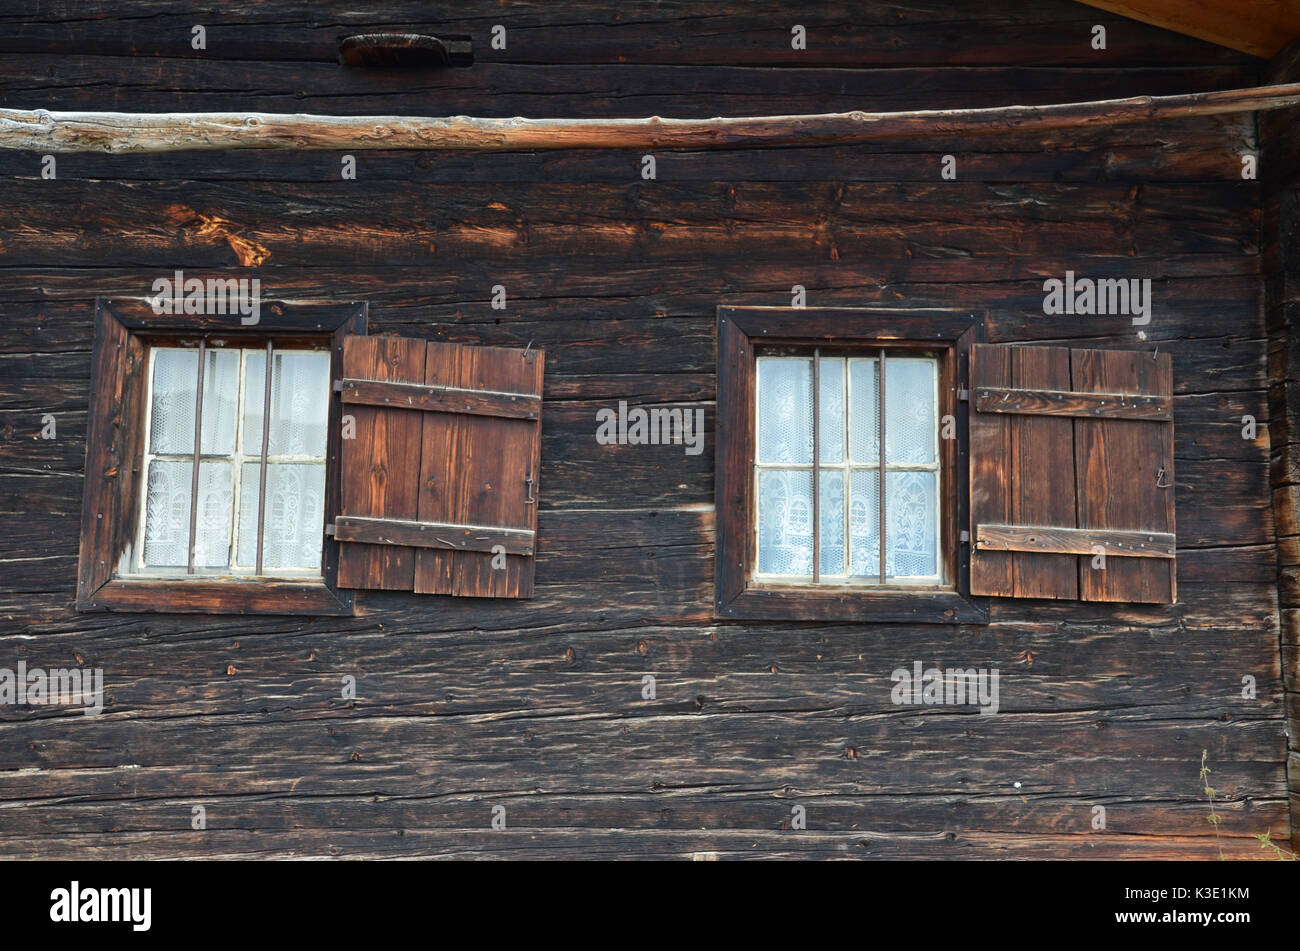 Rural idyll, wooden hut, window, Stock Photo